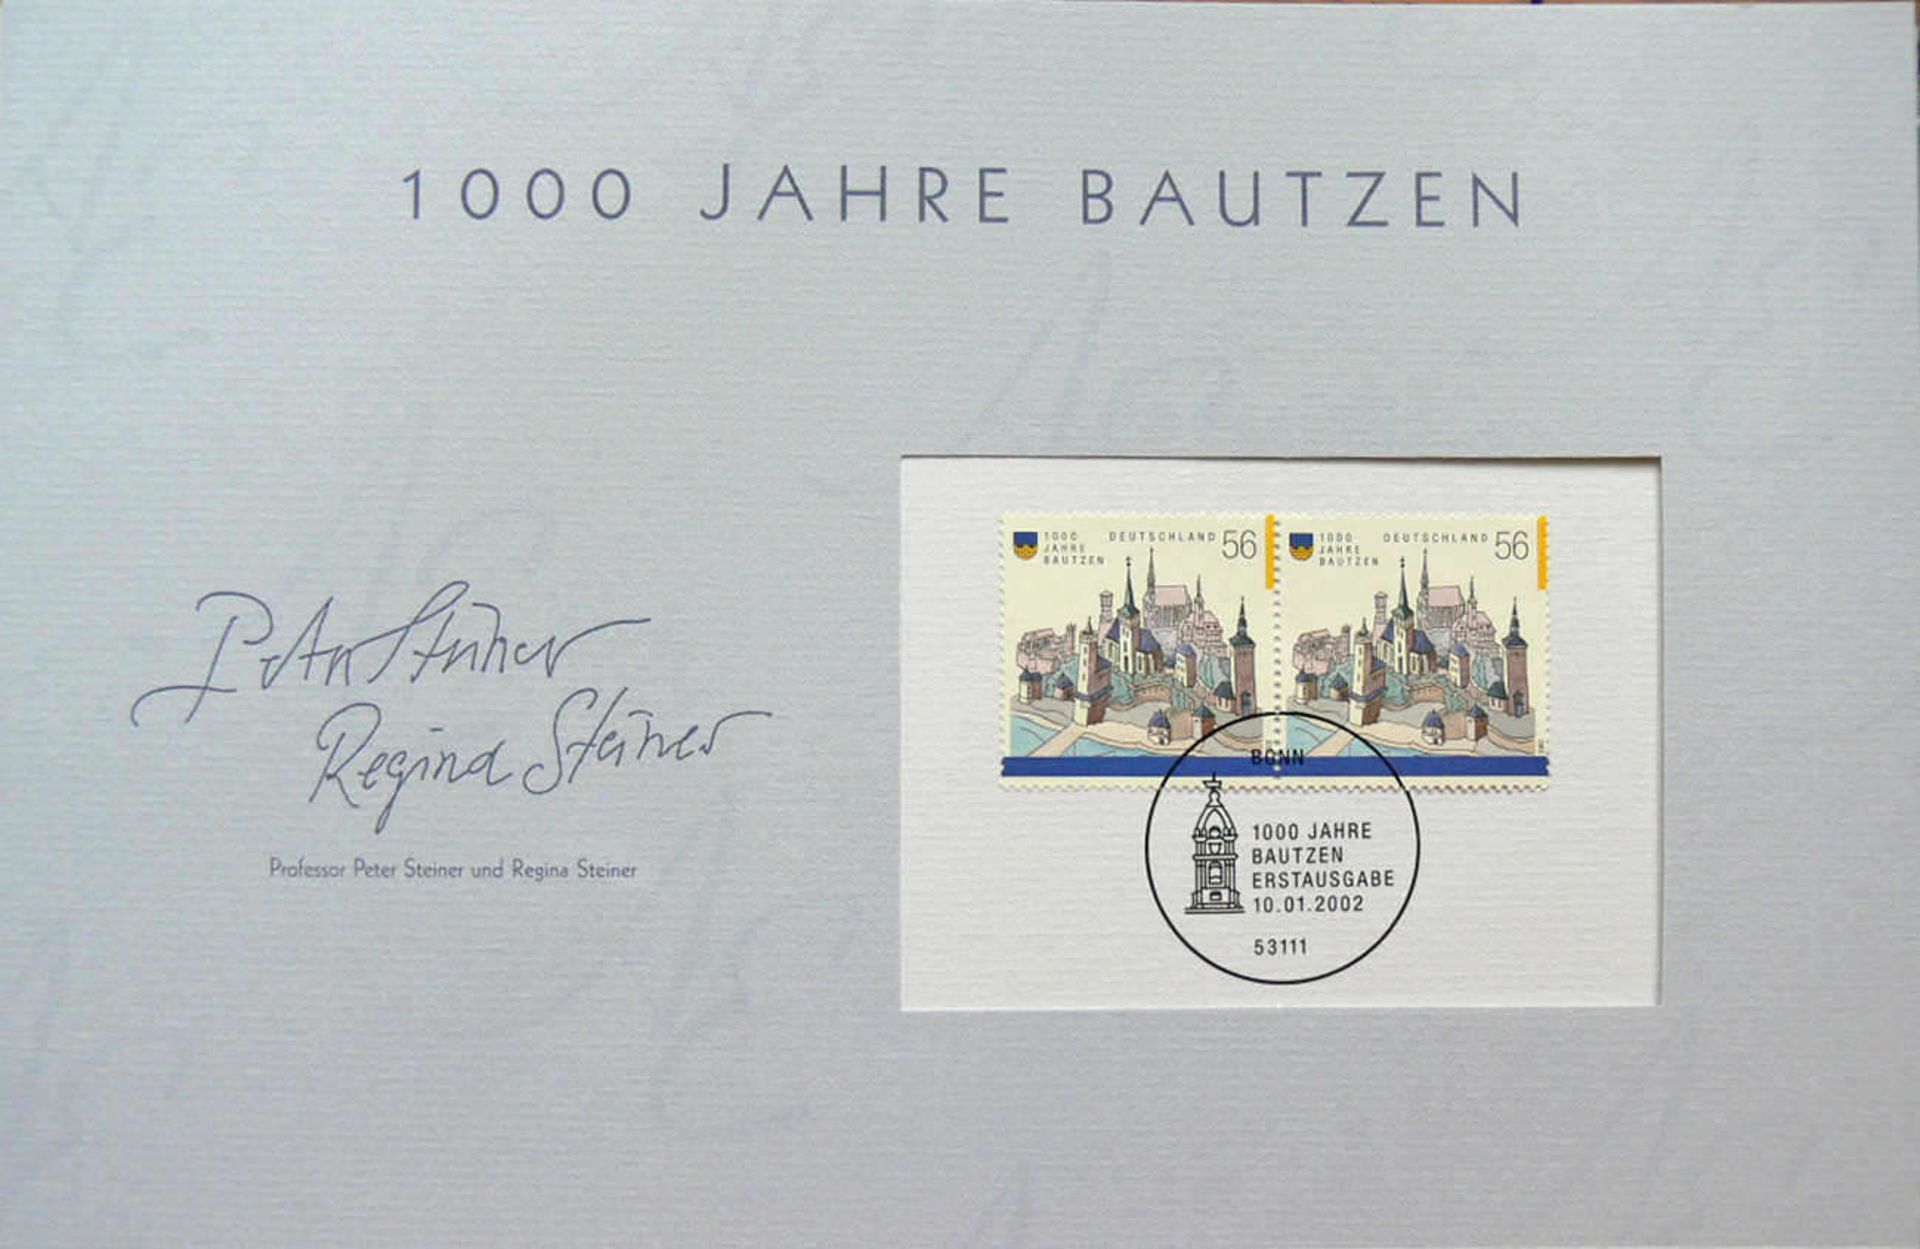 BRD, zwei Abo - Alben: 1. Atelier Edition 2002. 2. 10 Jahre deutsche Einheit. Germany, two - Image 3 of 8